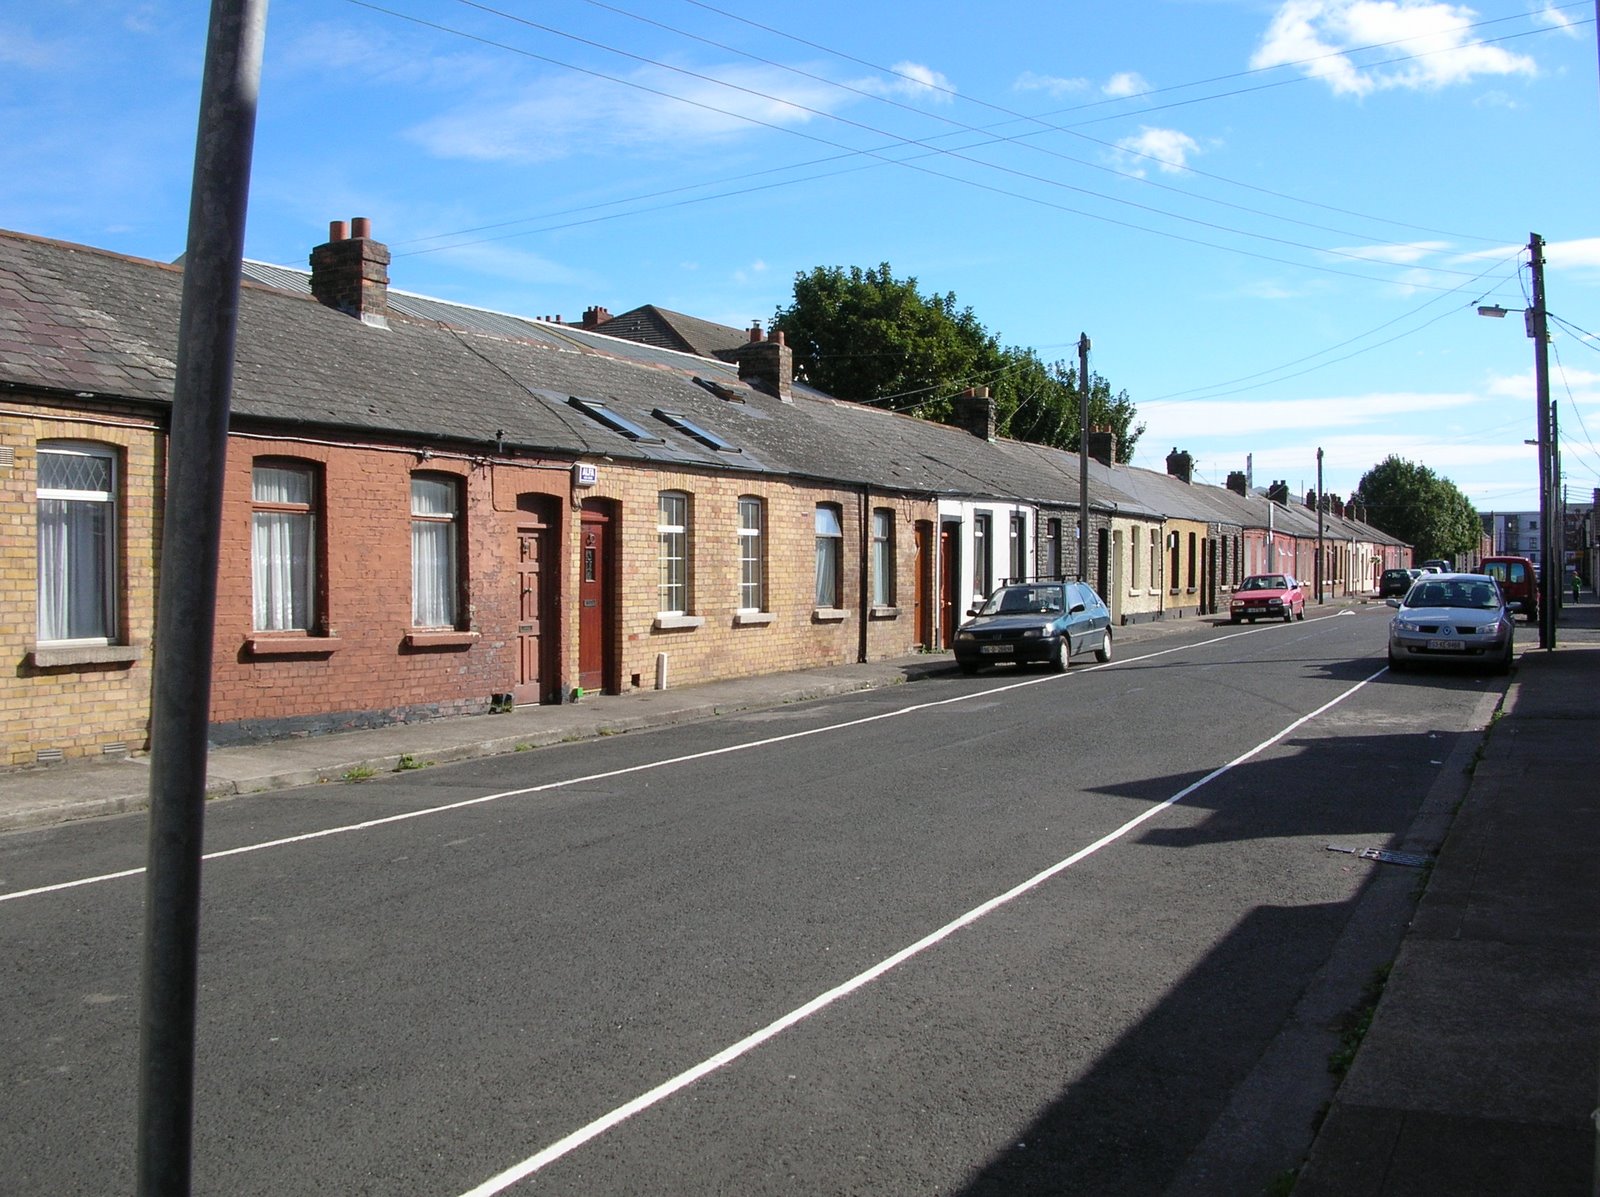 houses on a typical Dublin street